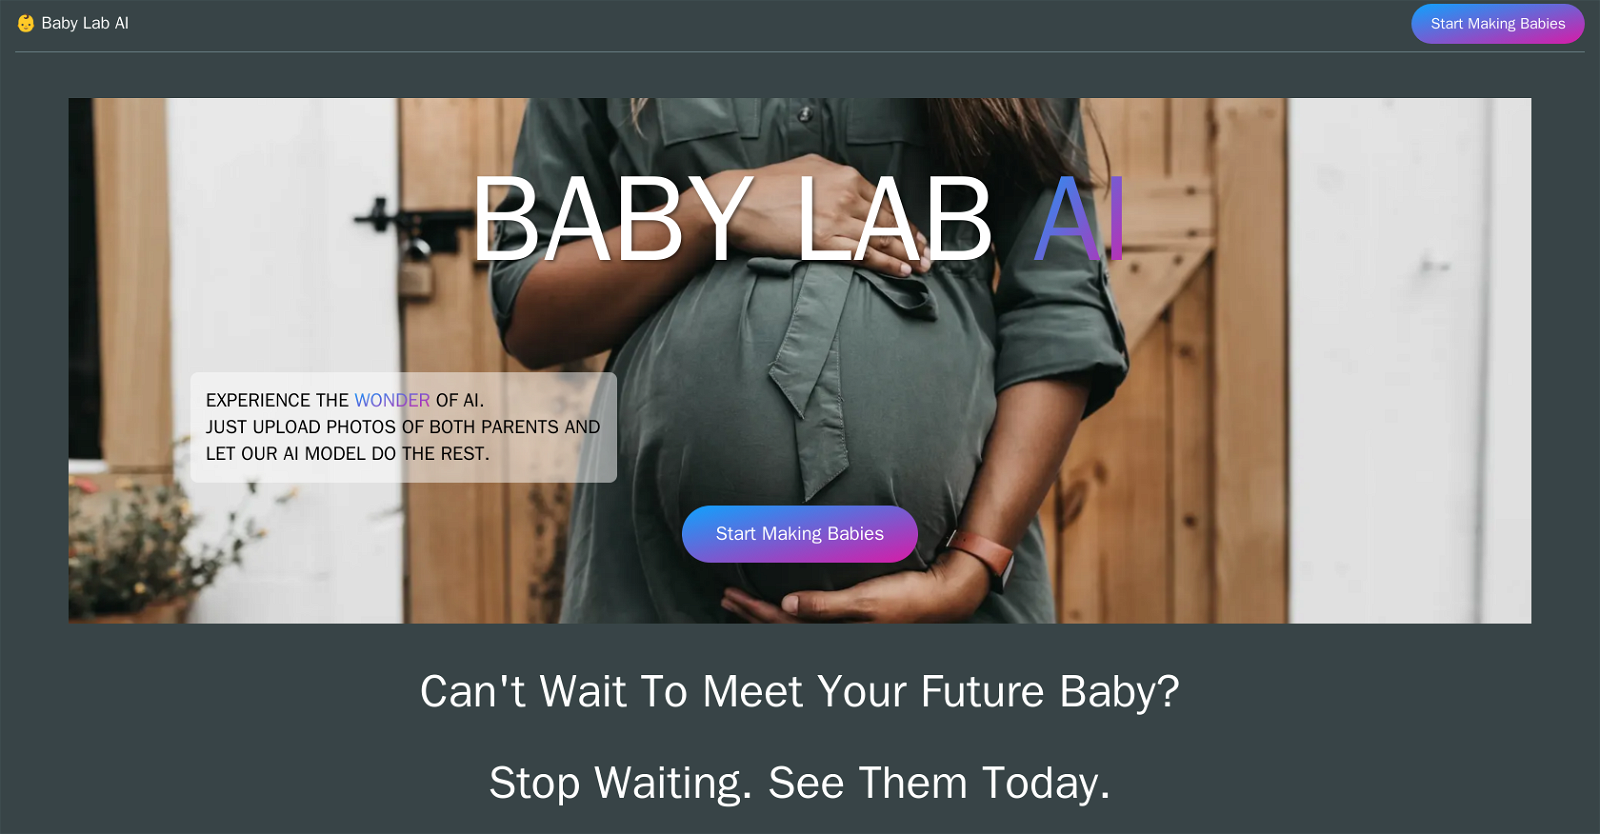 BabyLab website